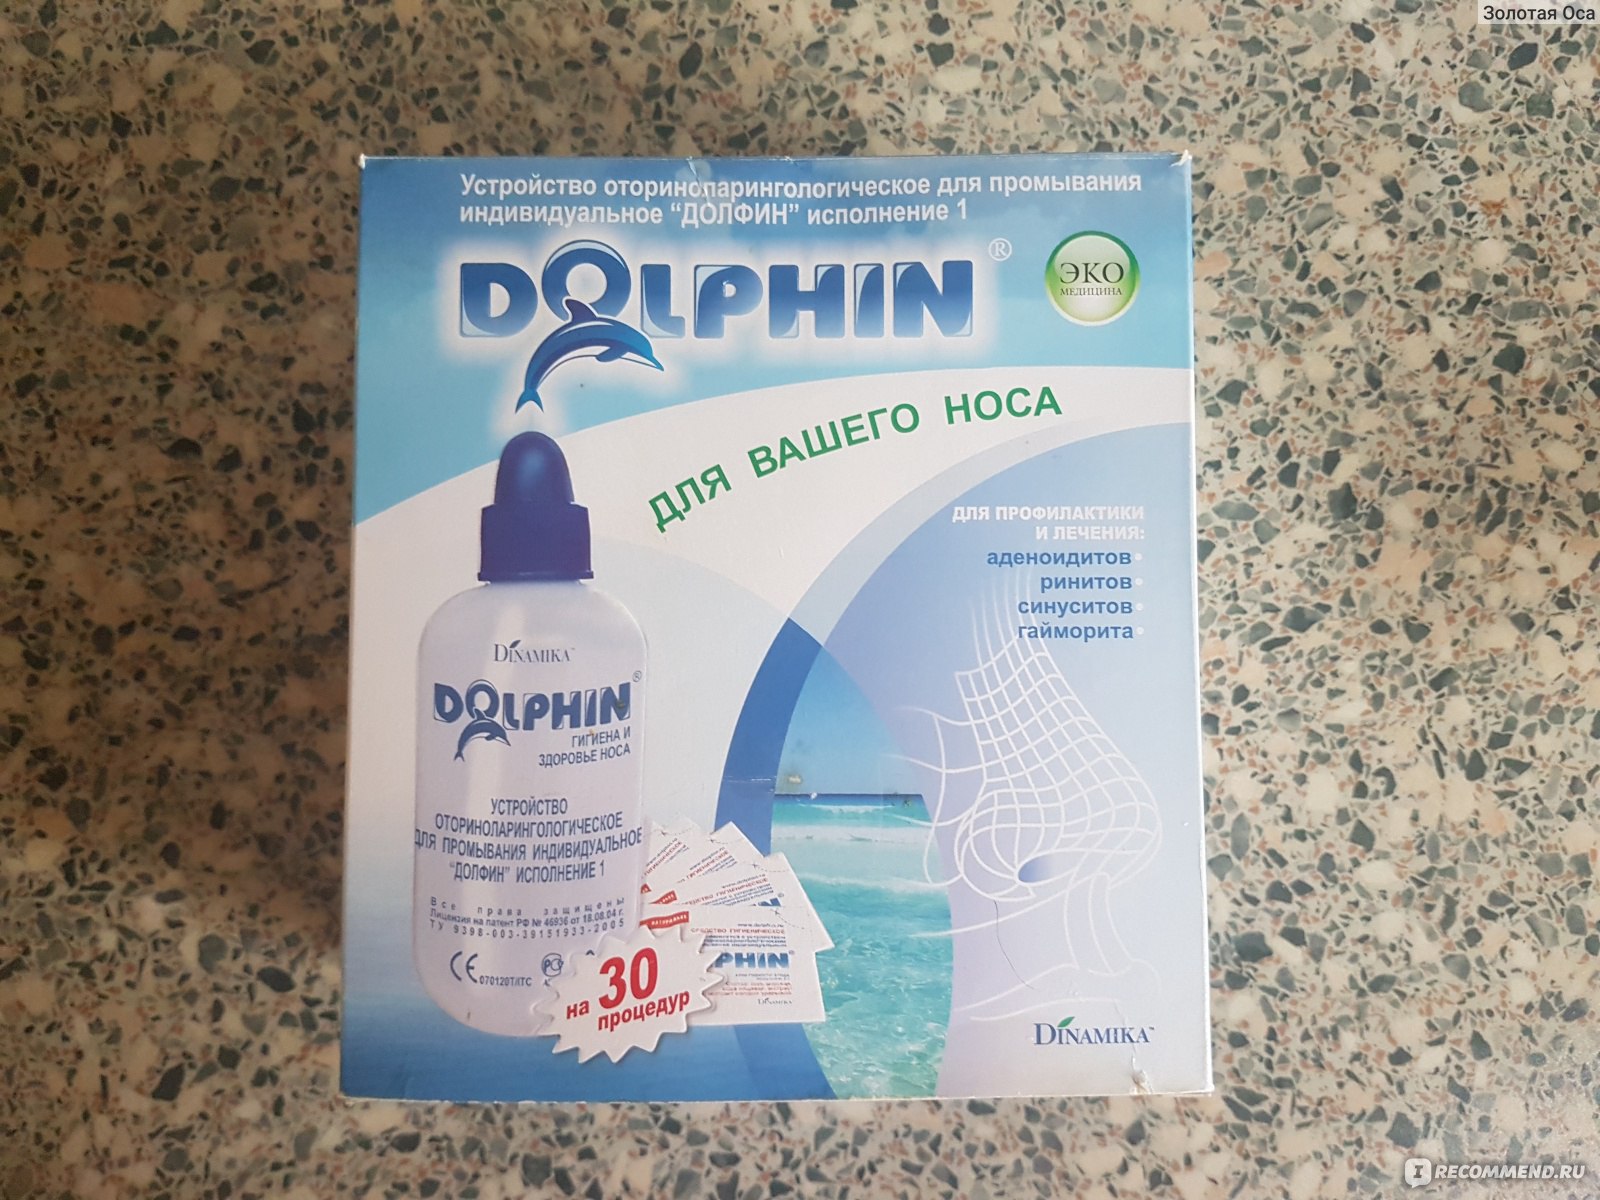 Долфин 366